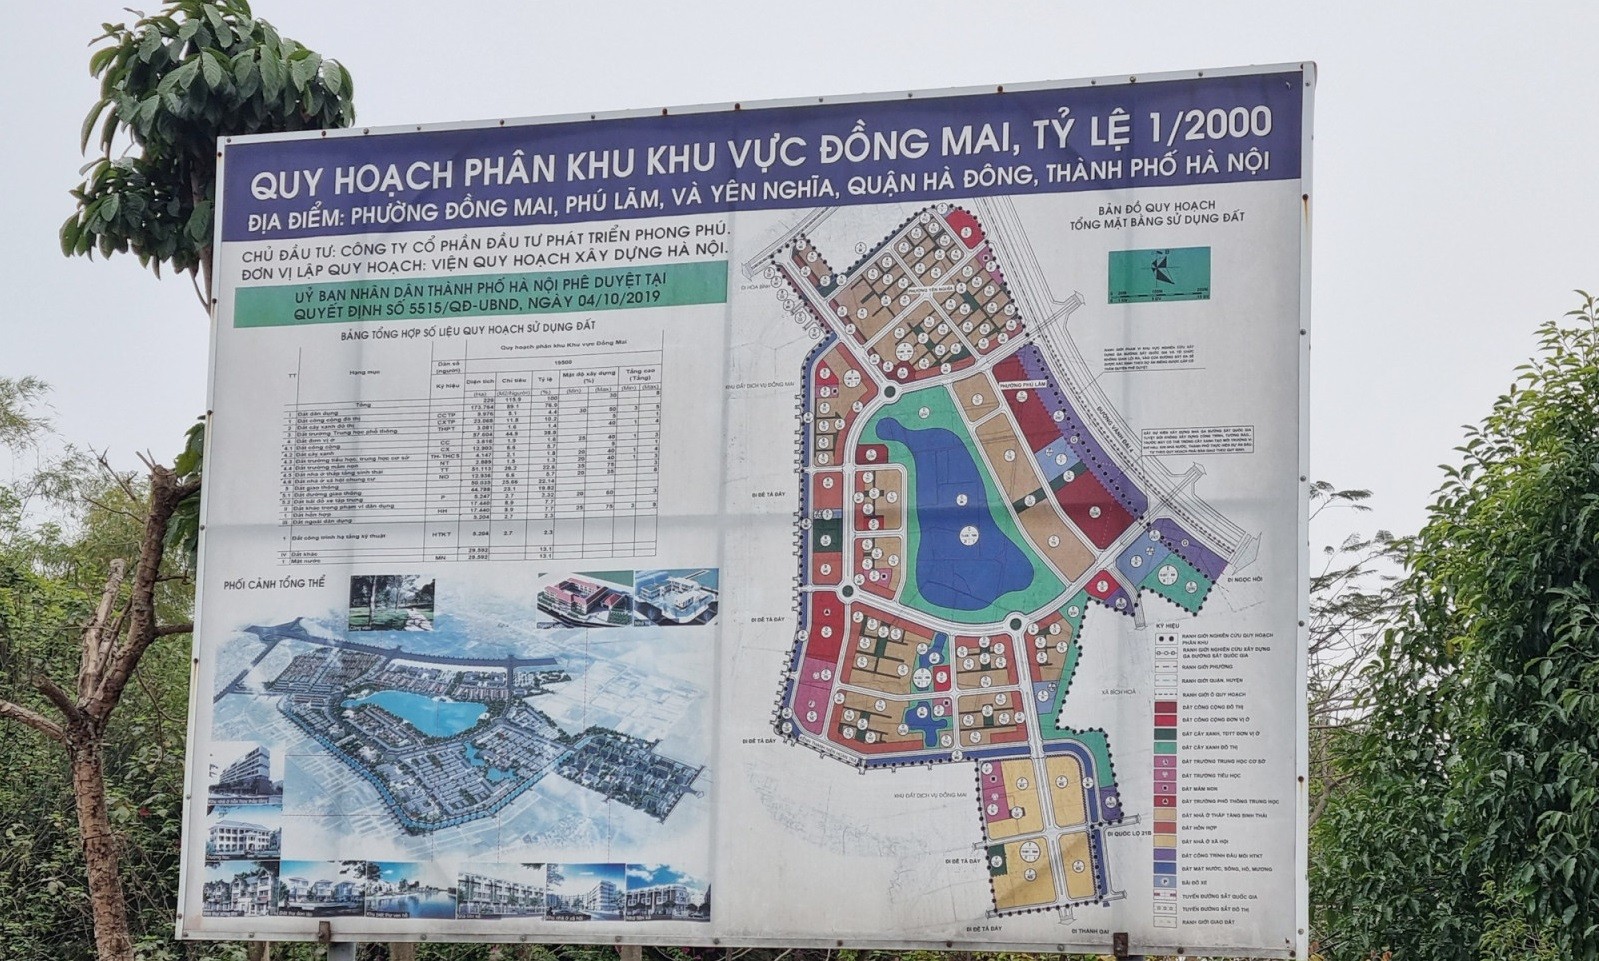 Gần 20 năm 'ôm đất' siêu dự án nhà ở sinh thái Đồng Mai thành nơi chăn bò, trạm bê tông 'lậu' - Ảnh 4.